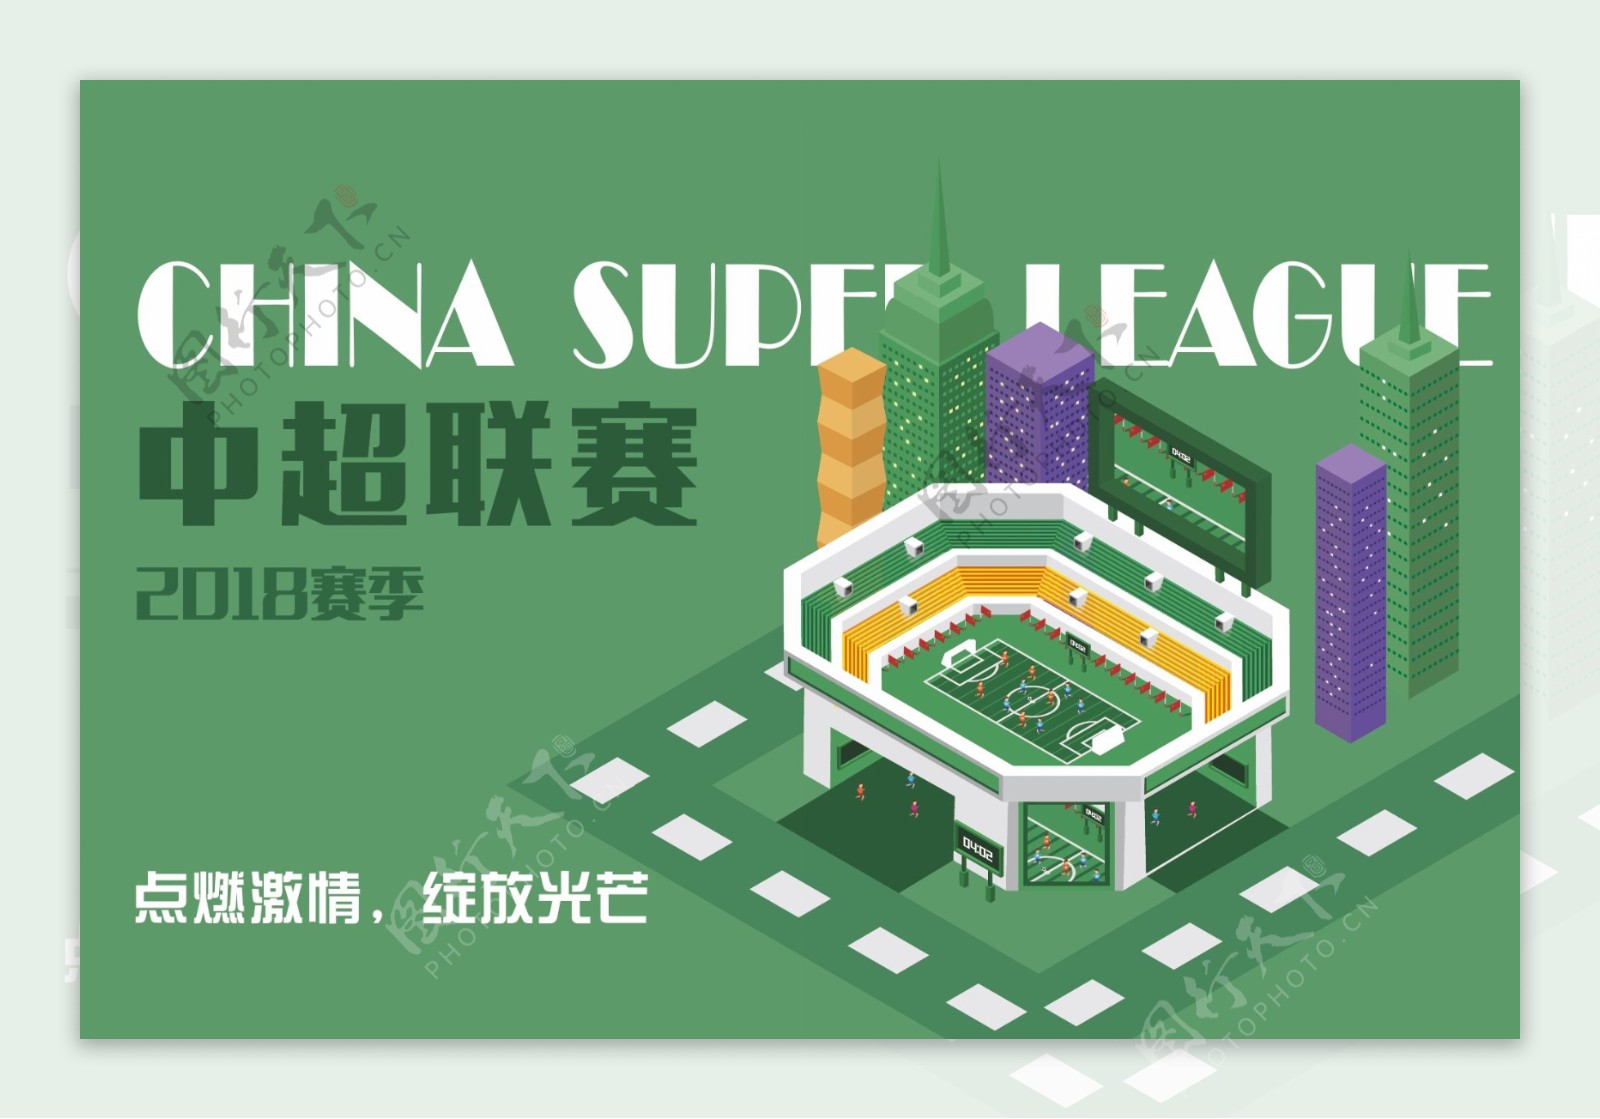 中超联赛足球赛场宣传海报